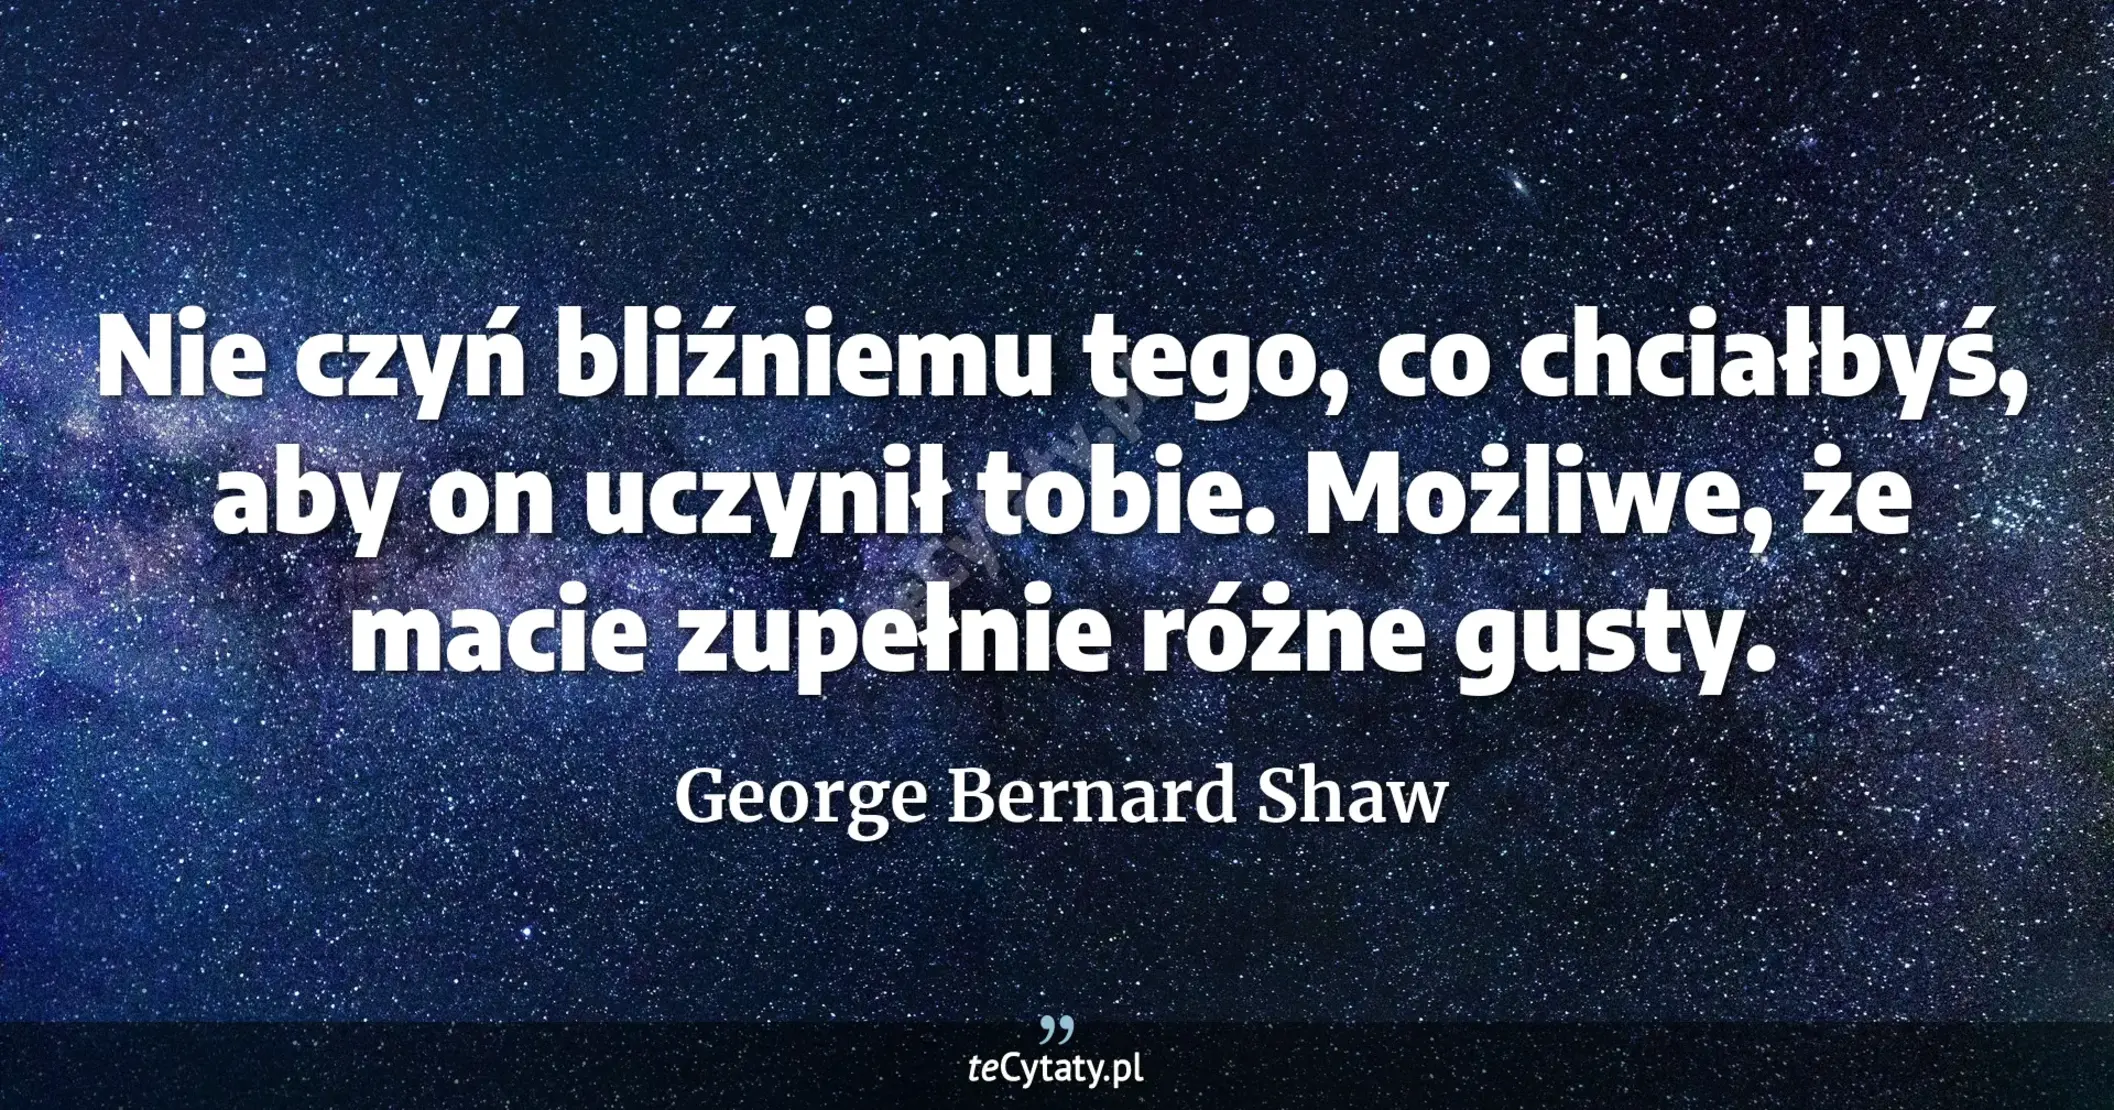 Nie czyń bliźniemu tego, co chciałbyś, aby on uczynił tobie. Możliwe, że macie zupełnie różne gusty. - George Bernard Shaw